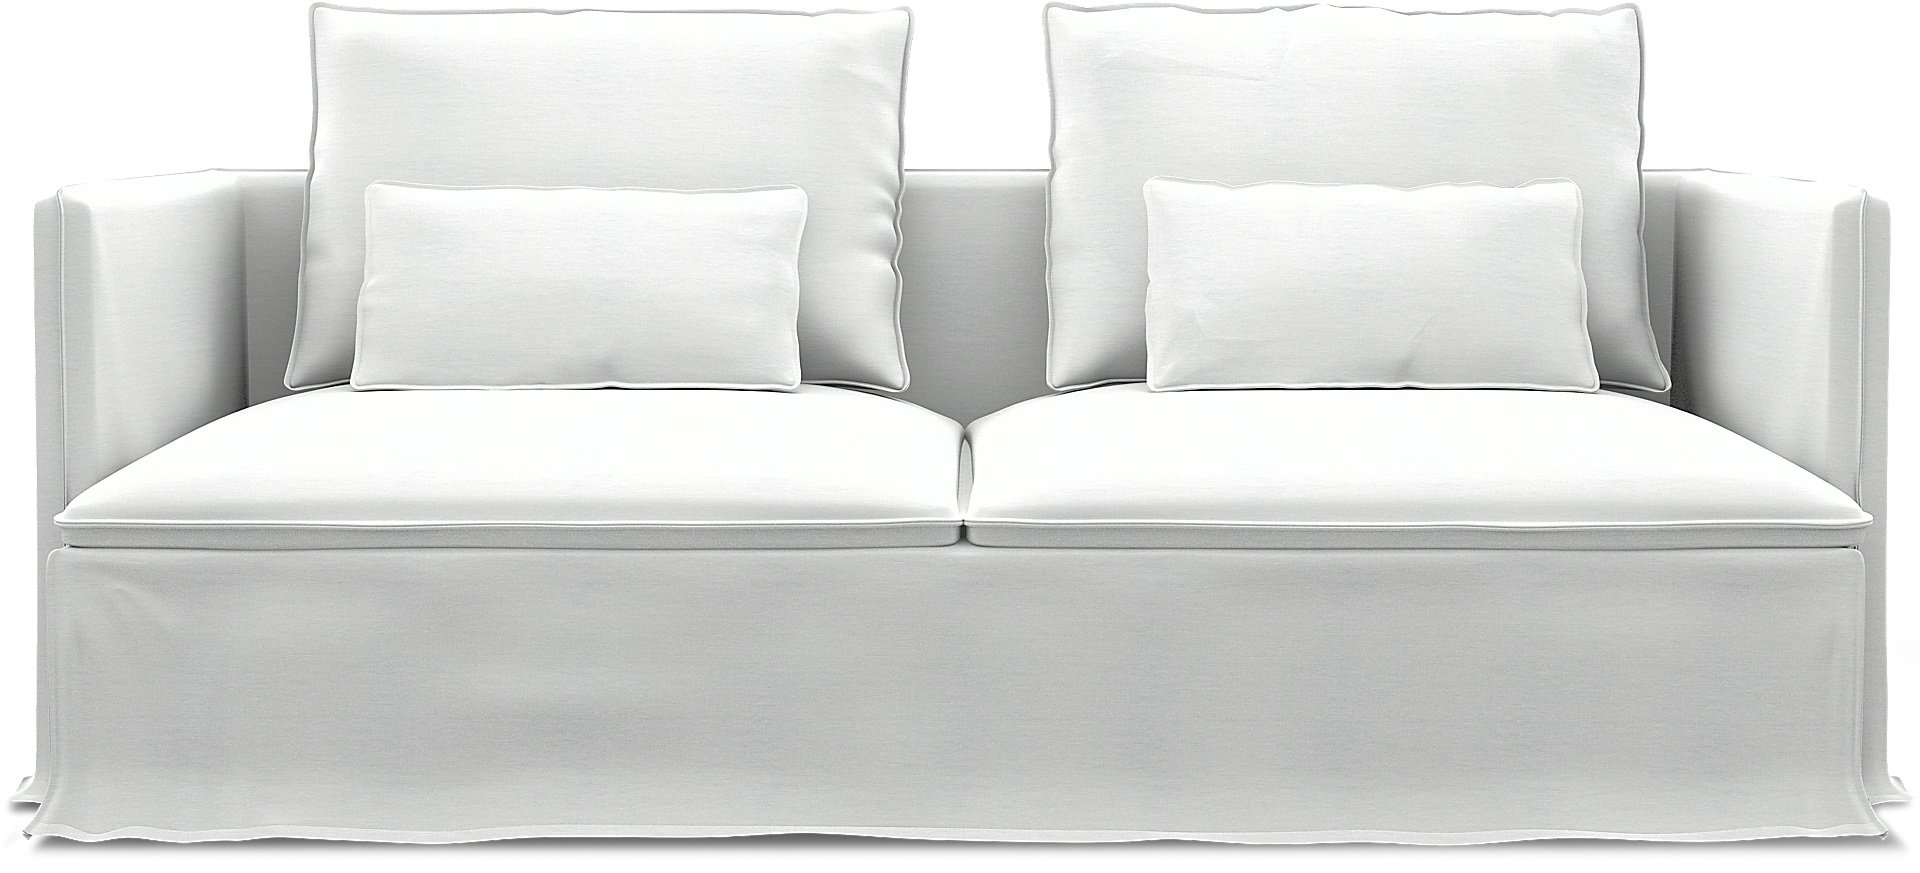 IKEA - Soderhamn 3 Seater Sofa Cover, White, Linen - Bemz